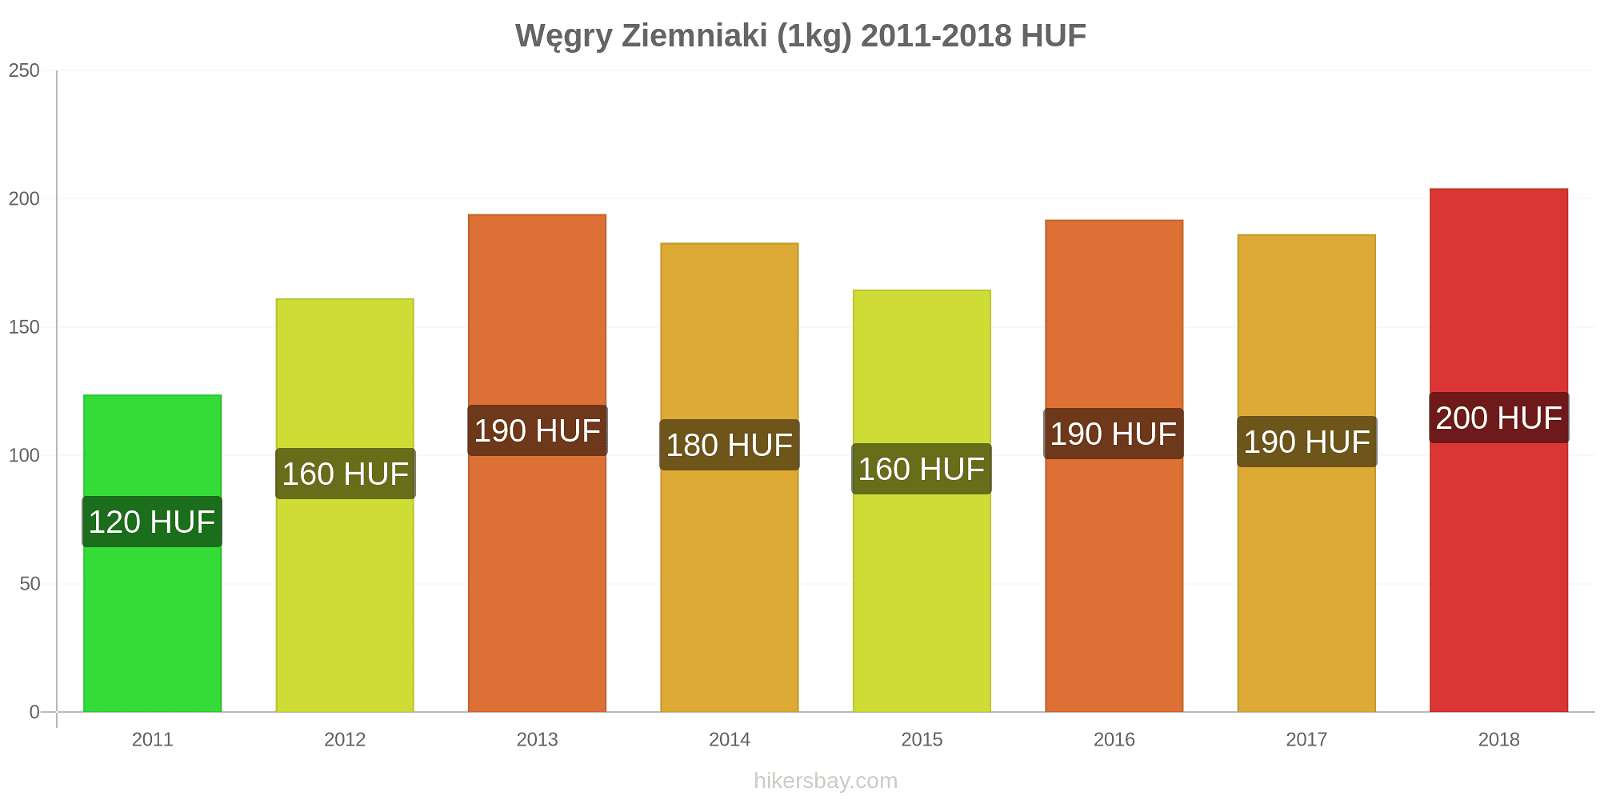 Węgry zmiany cen Ziemniaki (1kg) hikersbay.com